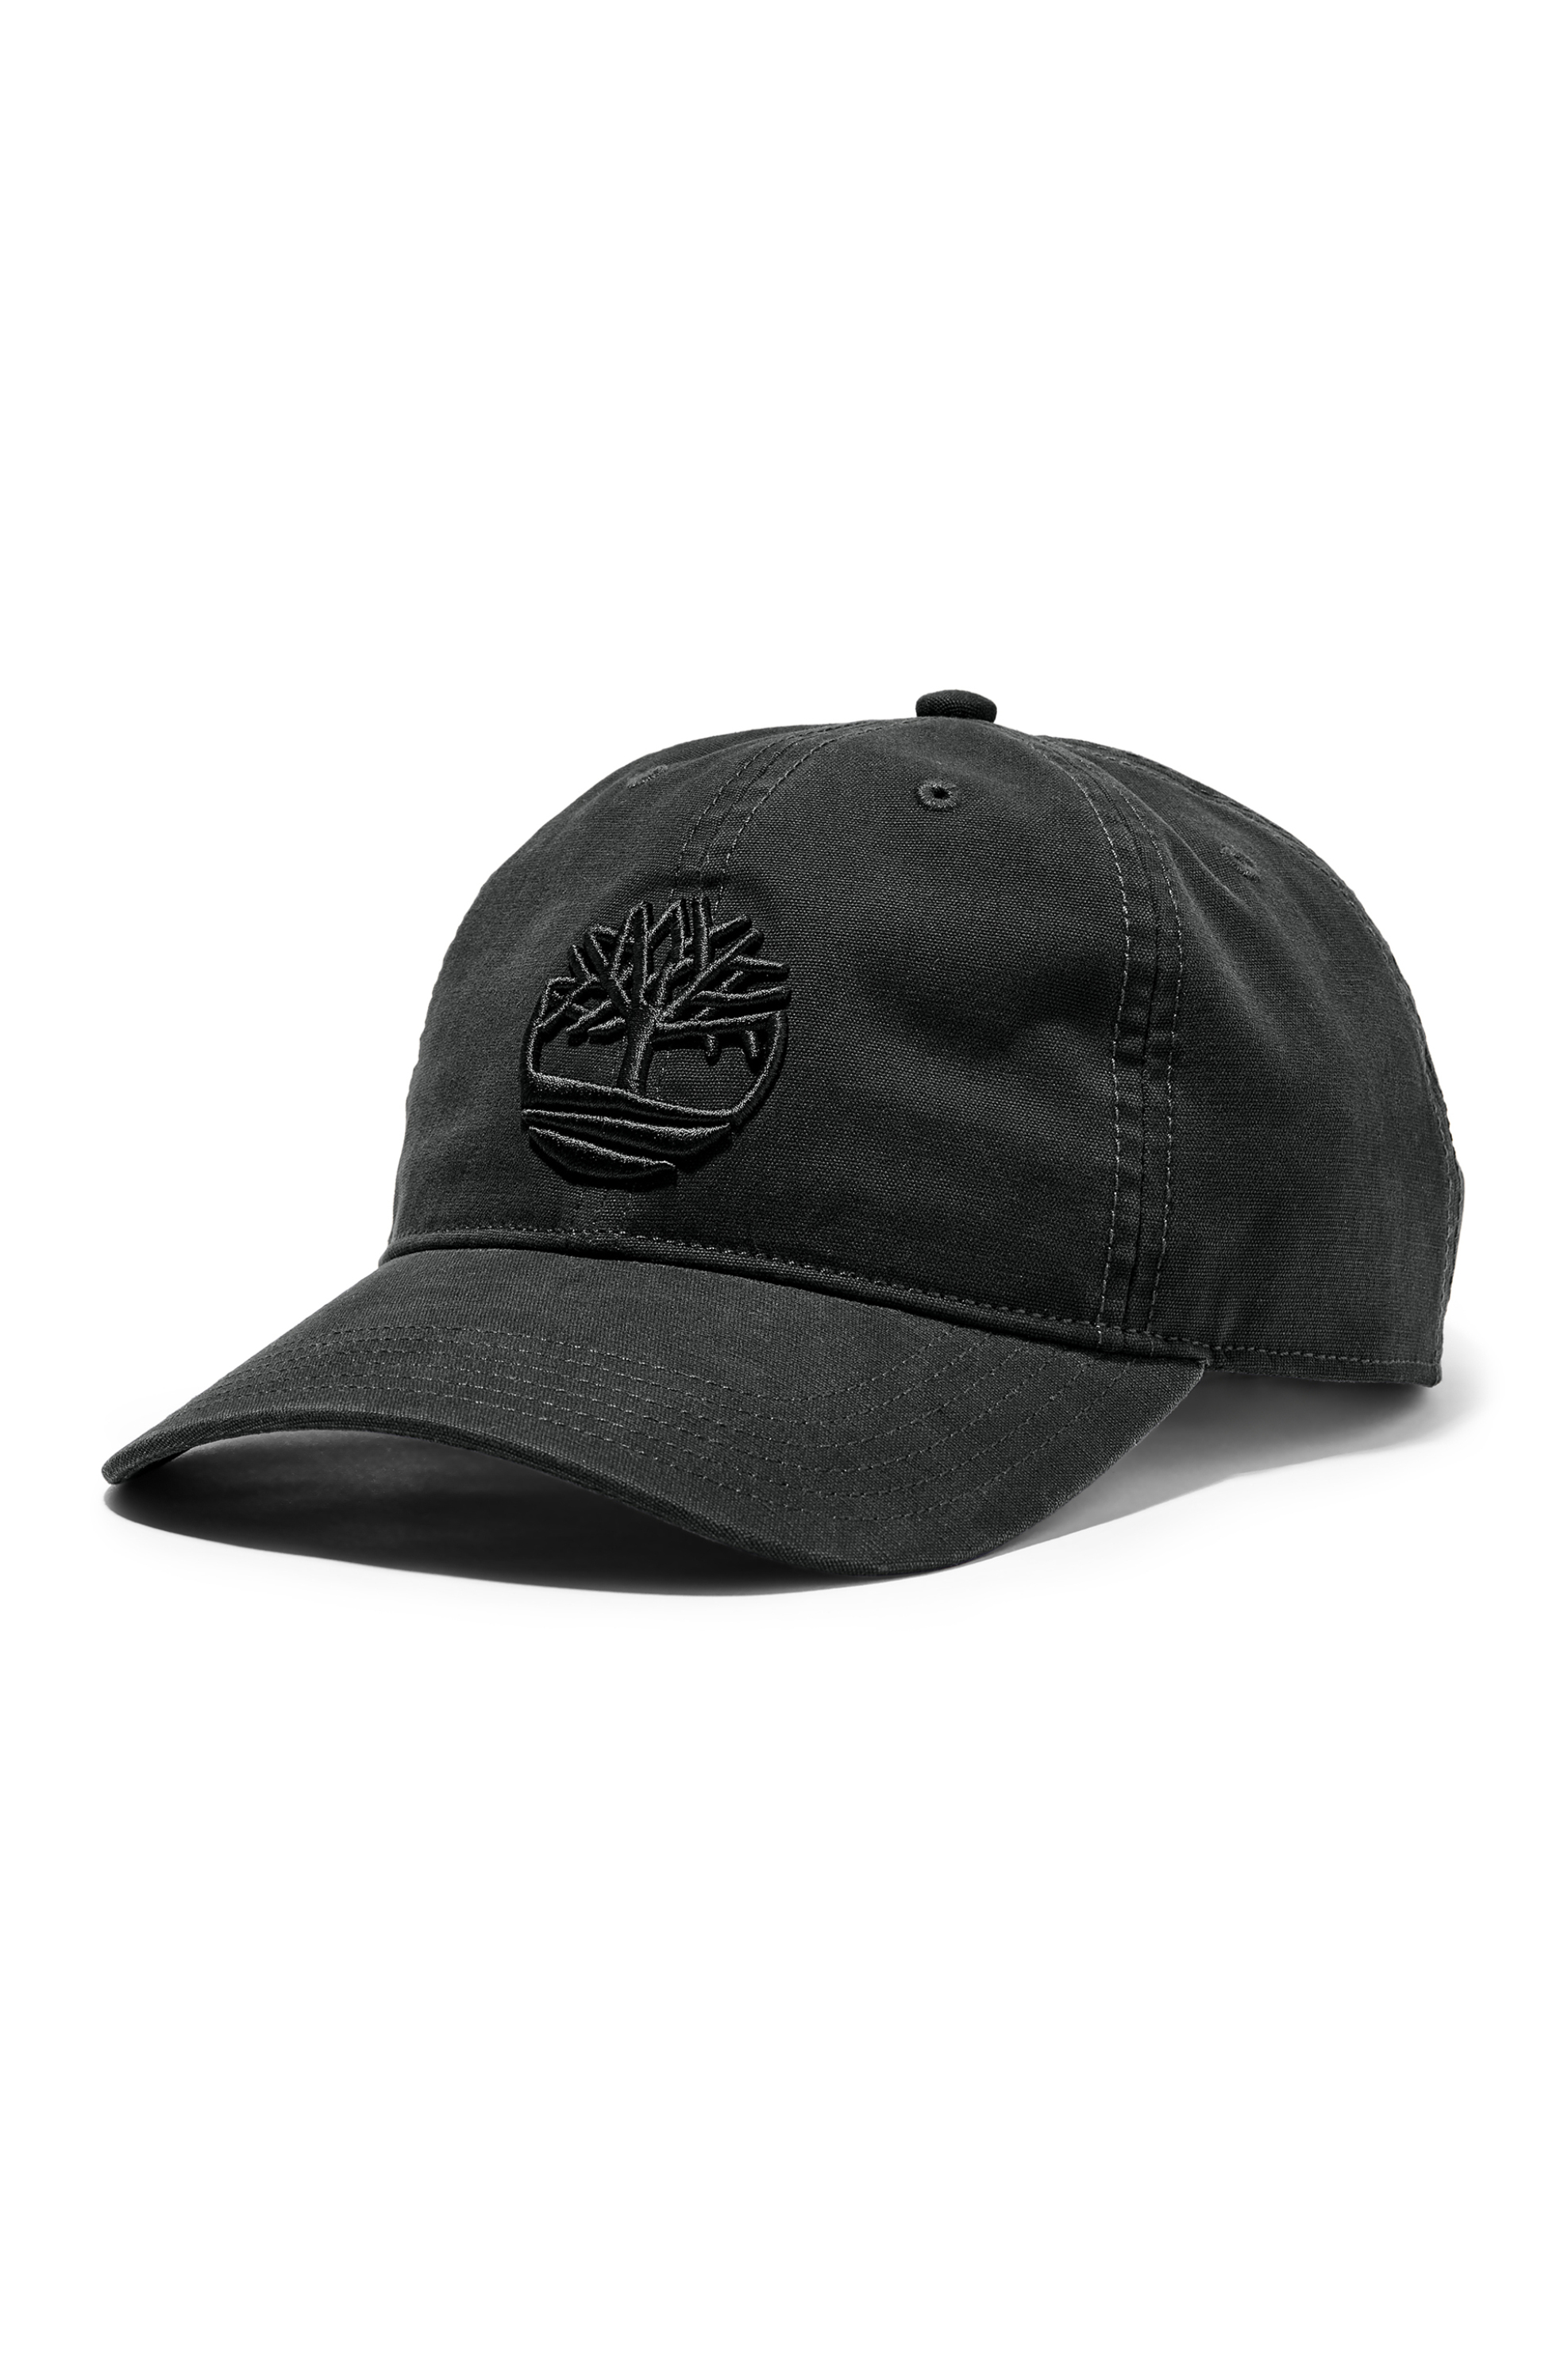 Ανδρική Μόδα > Ανδρικά Αξεσουάρ > Ανδρικά Καπέλα & Σκούφοι Timberland ανδρικό καπελο jockey με κεντημένο λογότυπο - TB0A1E9M0011 Μαύρο